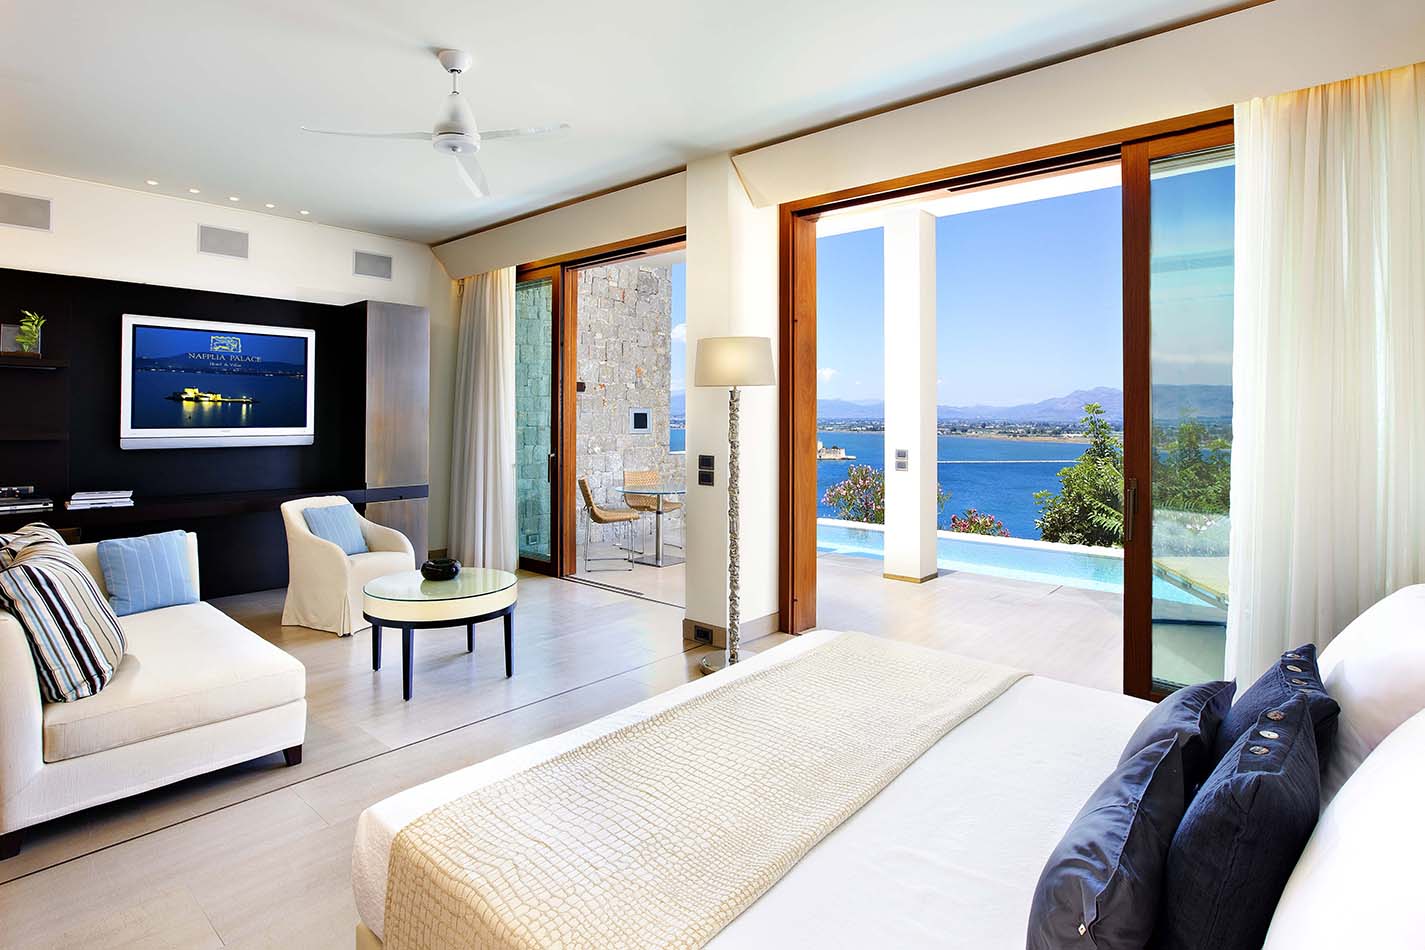 9. Premier Villa Sea View With Private Pool